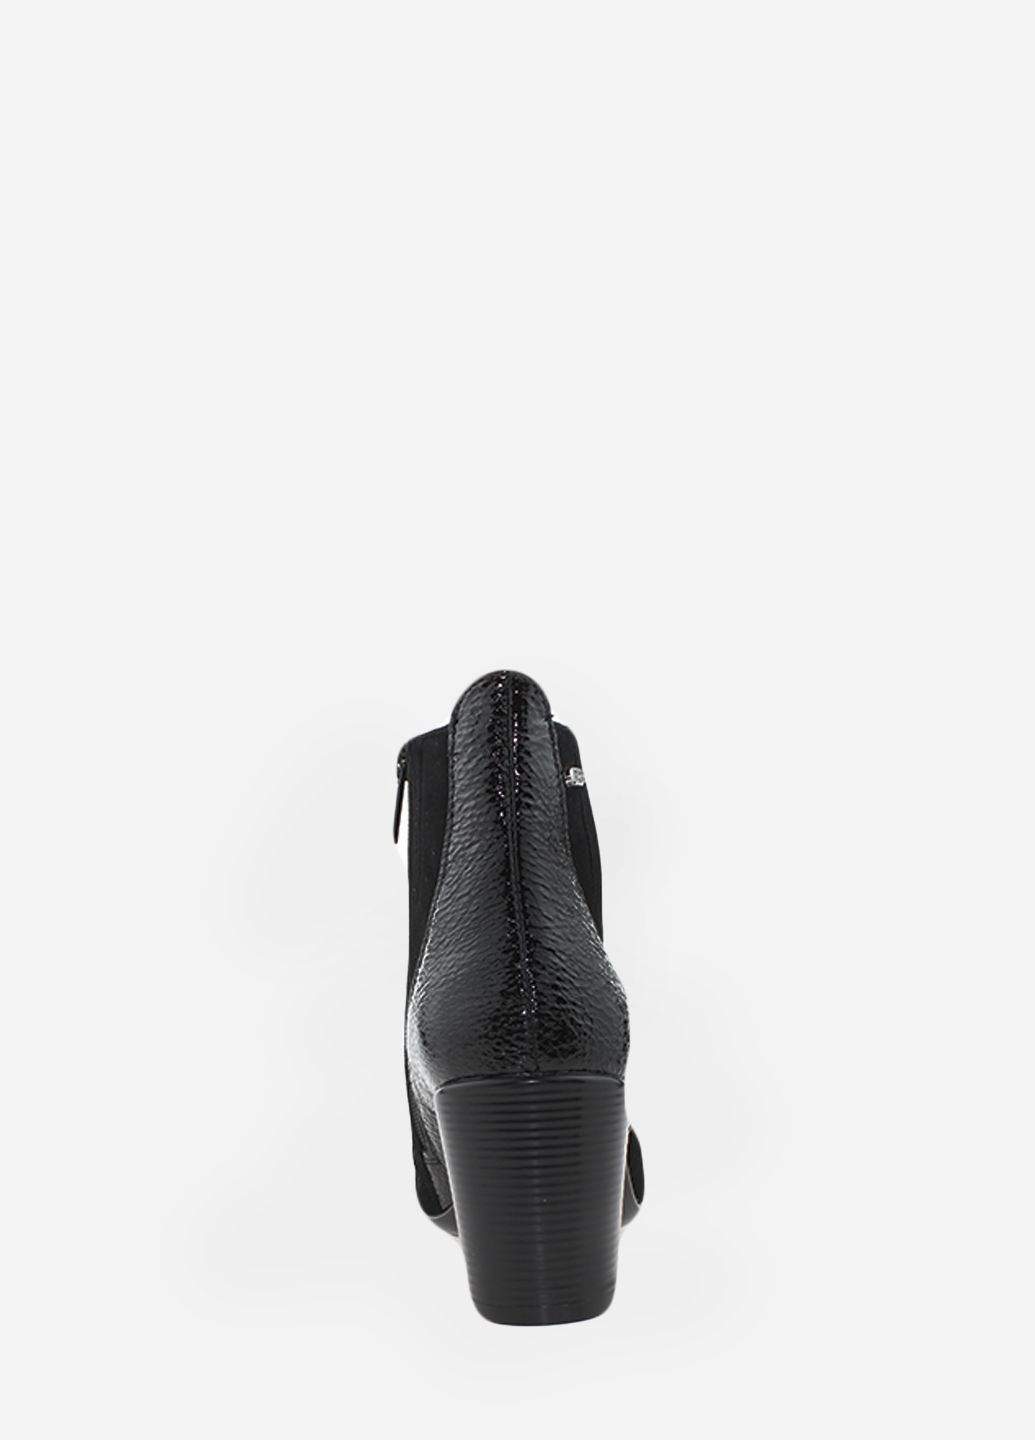 Осенние ботинки rk1142 черный Kseniya из натурального нубука